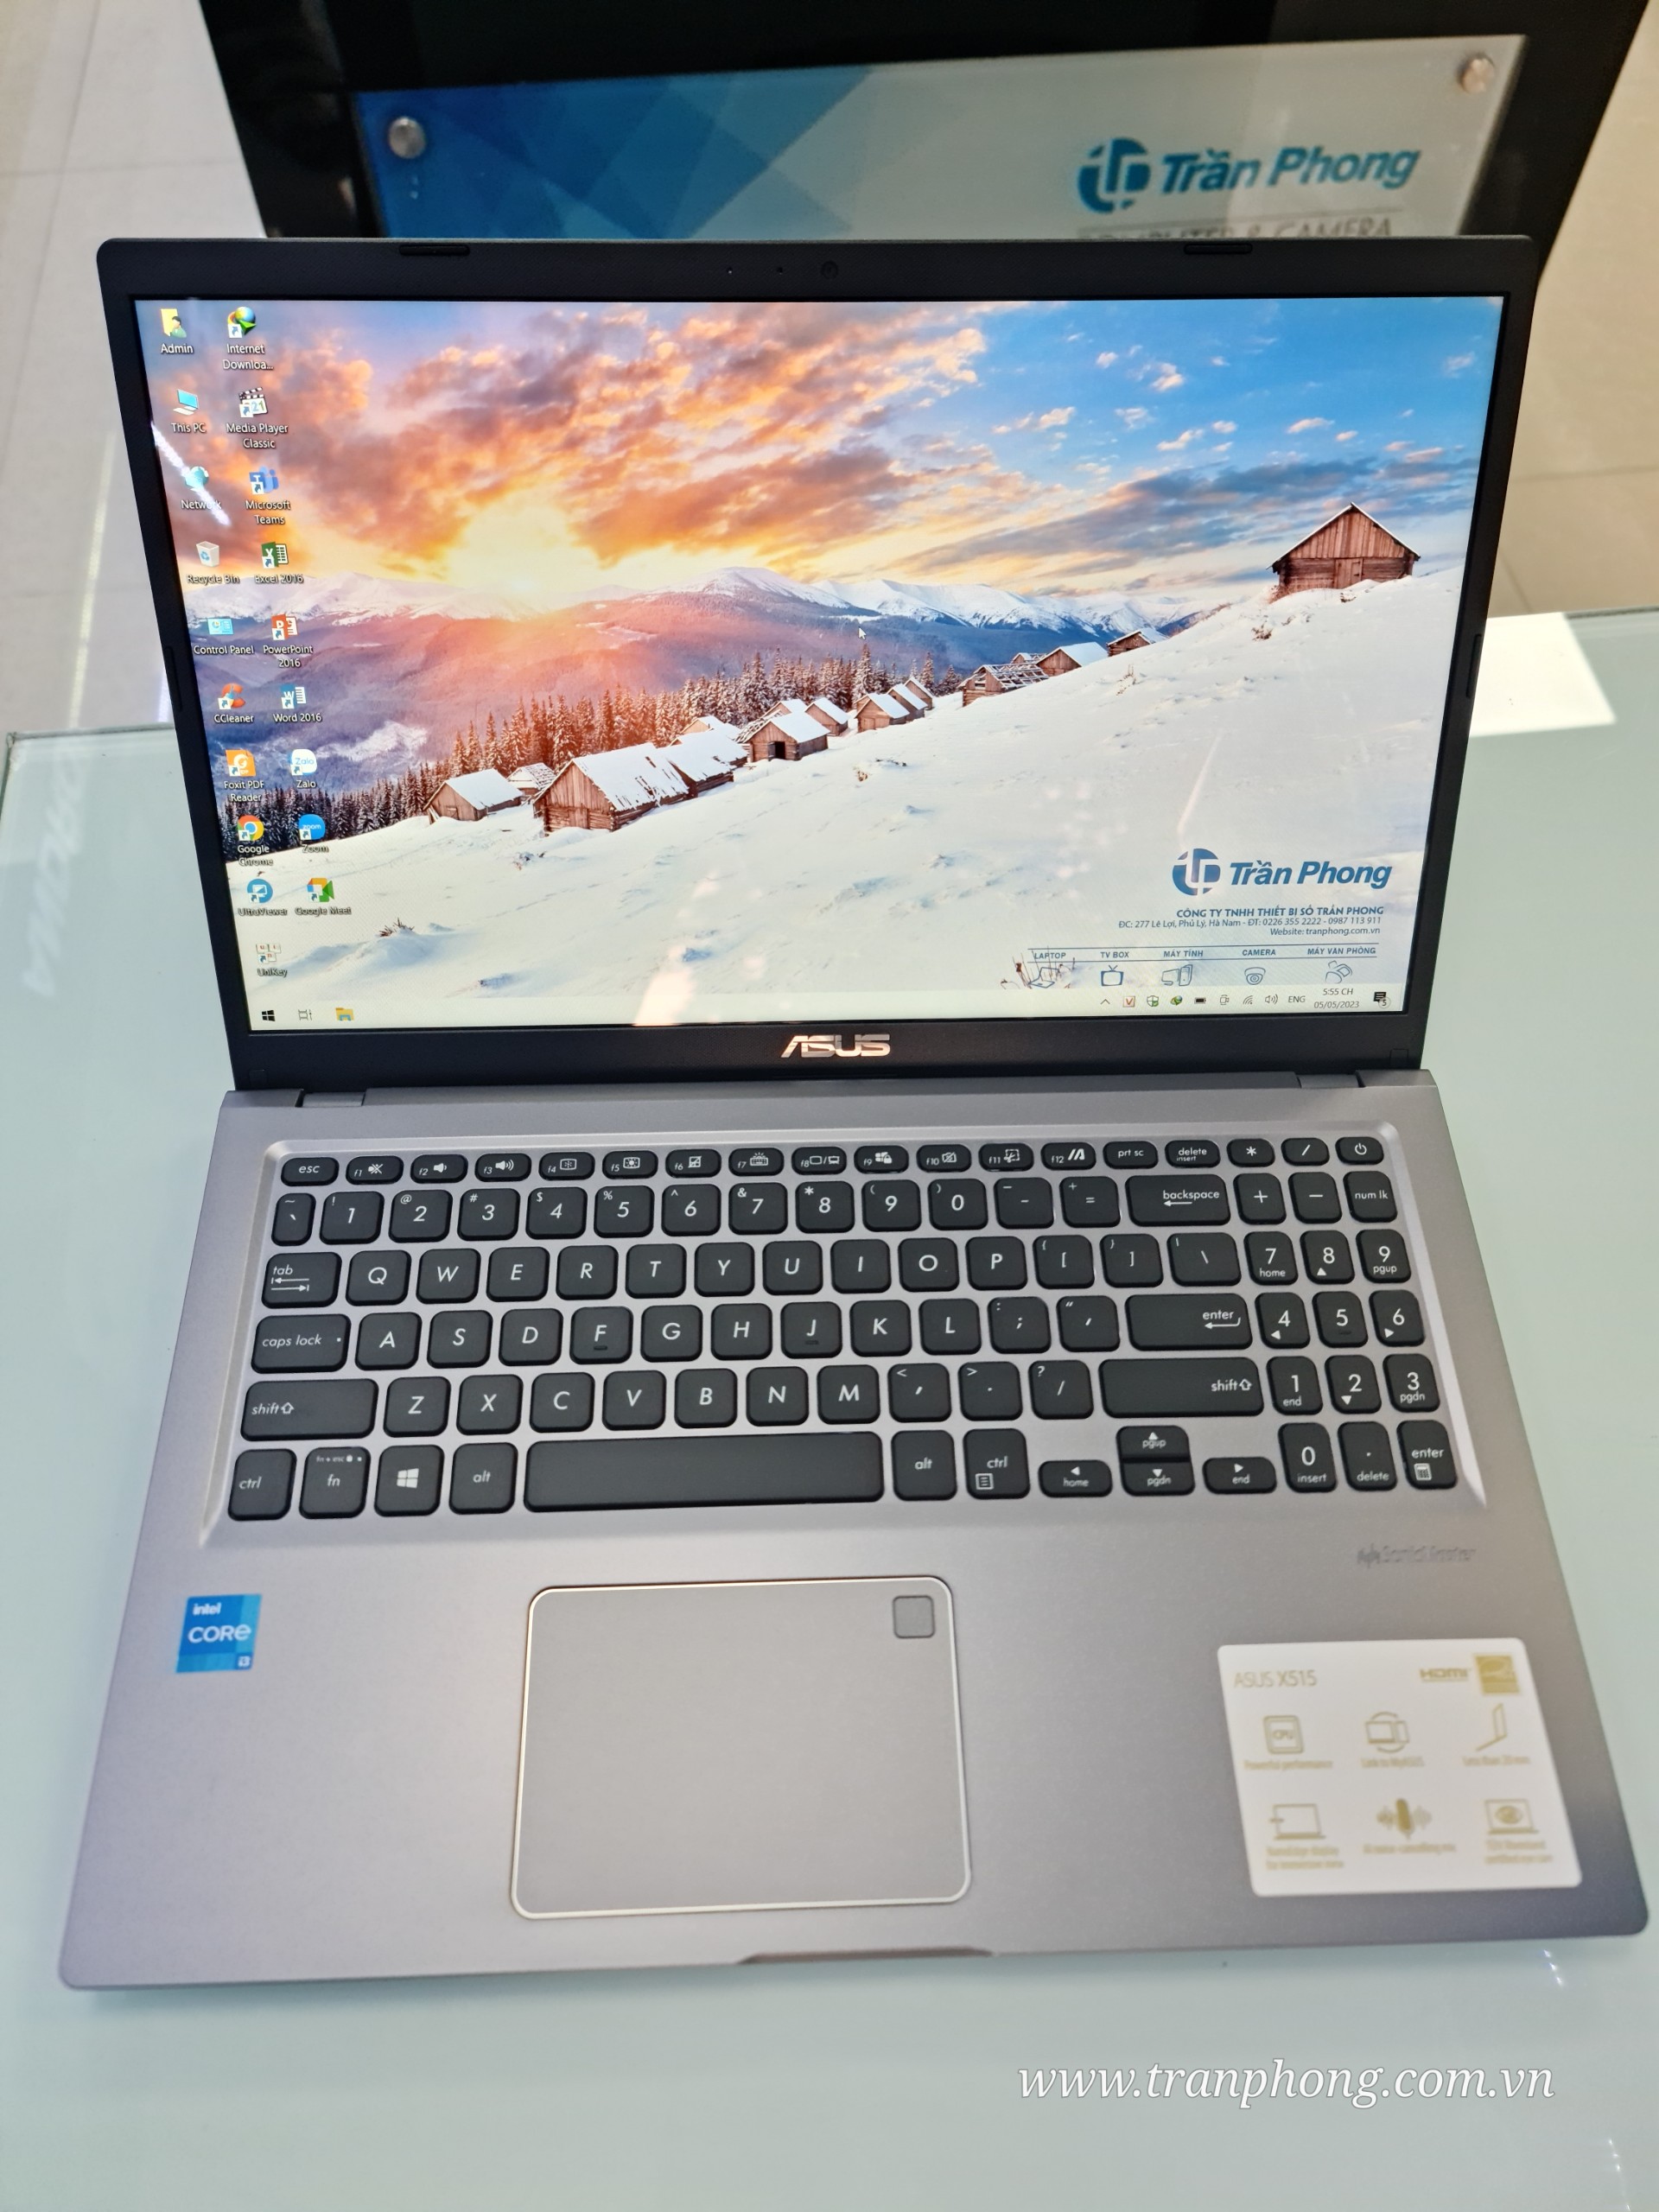 Laptop ASUS VivoBook R565EA (X515) Core™ i3-1115G4 3.0GHz 4G 128G SSD 15.6